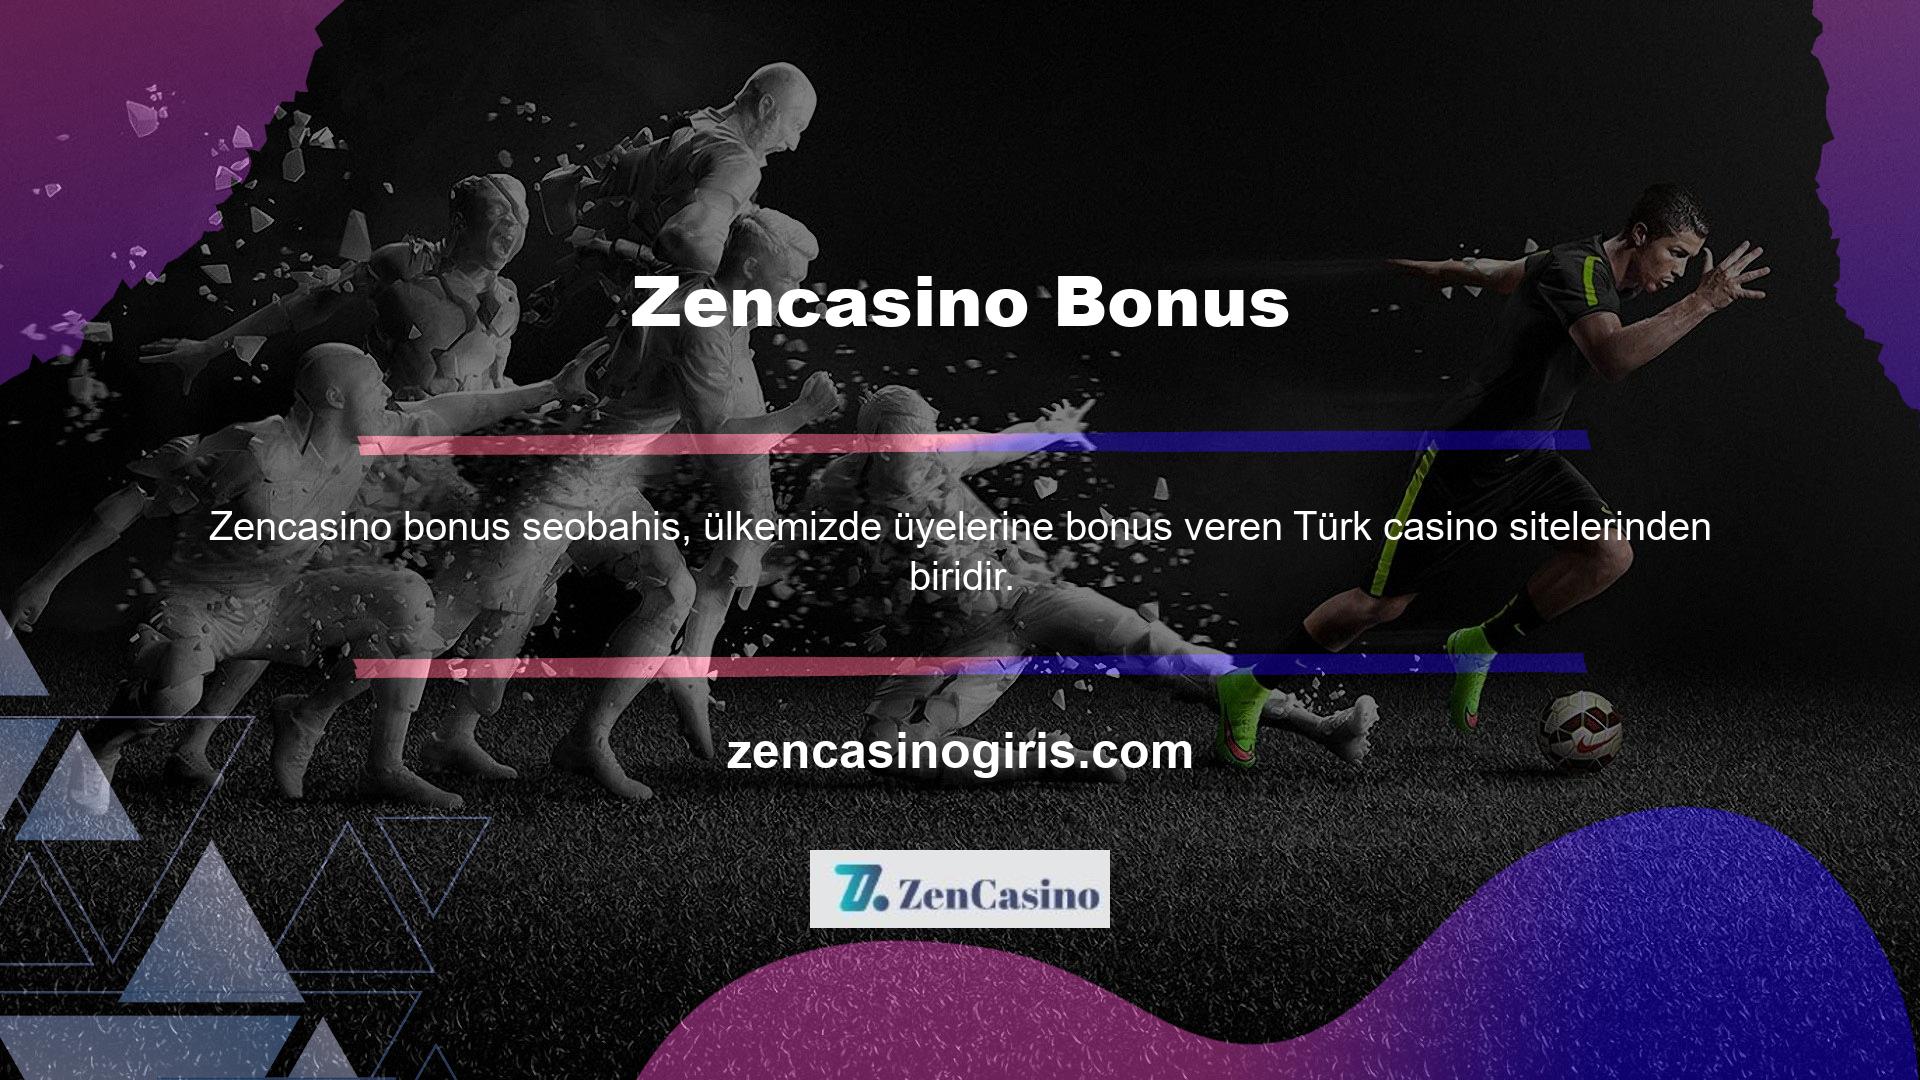 Hem hizmet hem de bonus ile ilgilenenler, yeni giriş adresleri ile Zencasino kayıt olabilirler